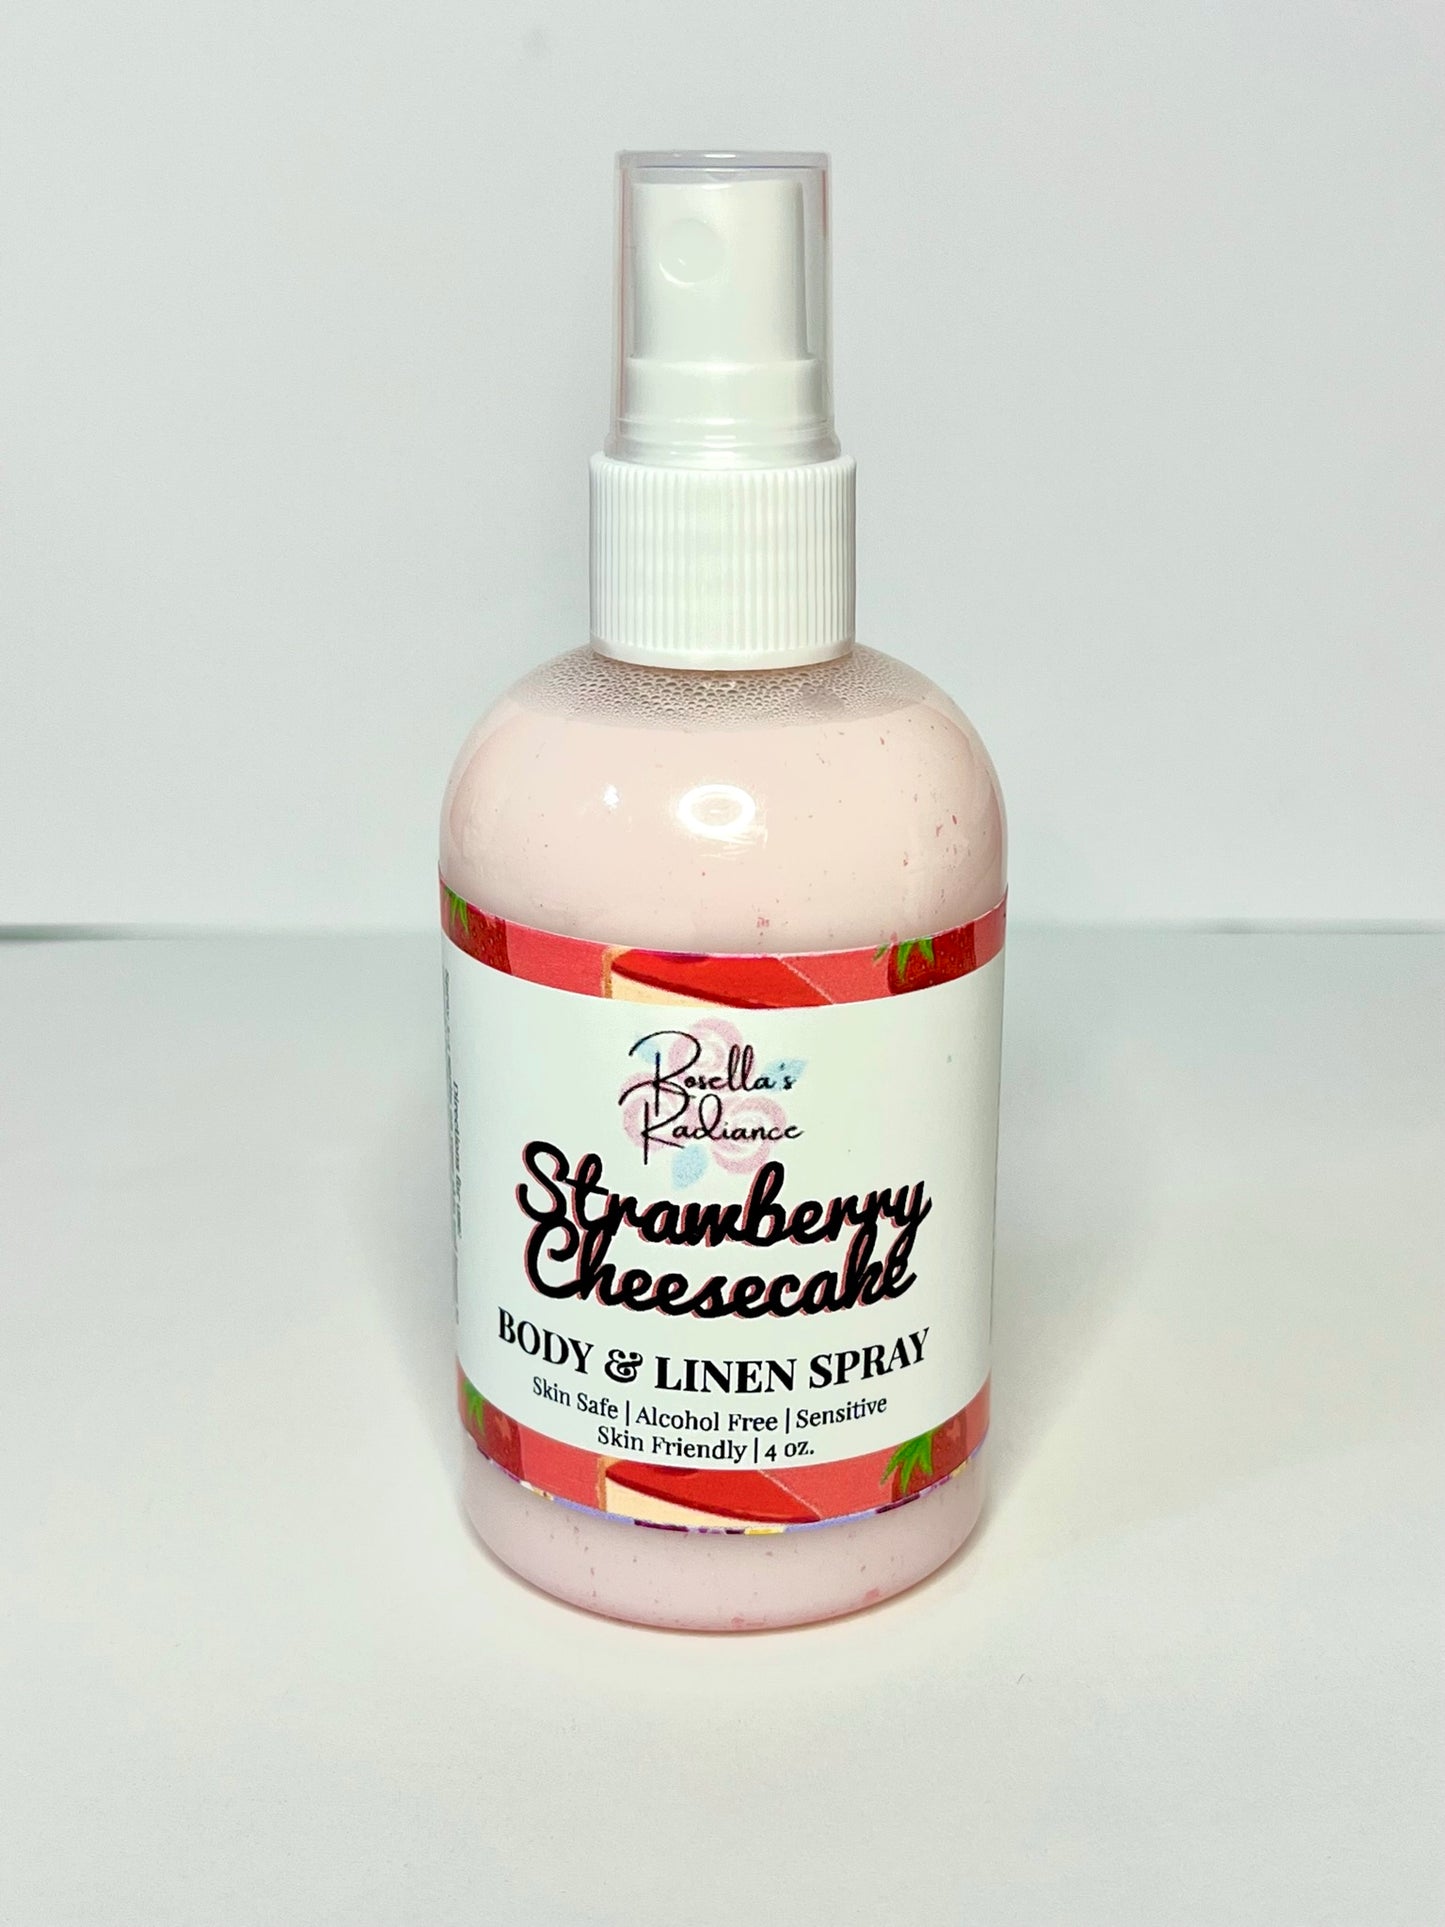 Strawberry Shortcake Body & Linen Spray